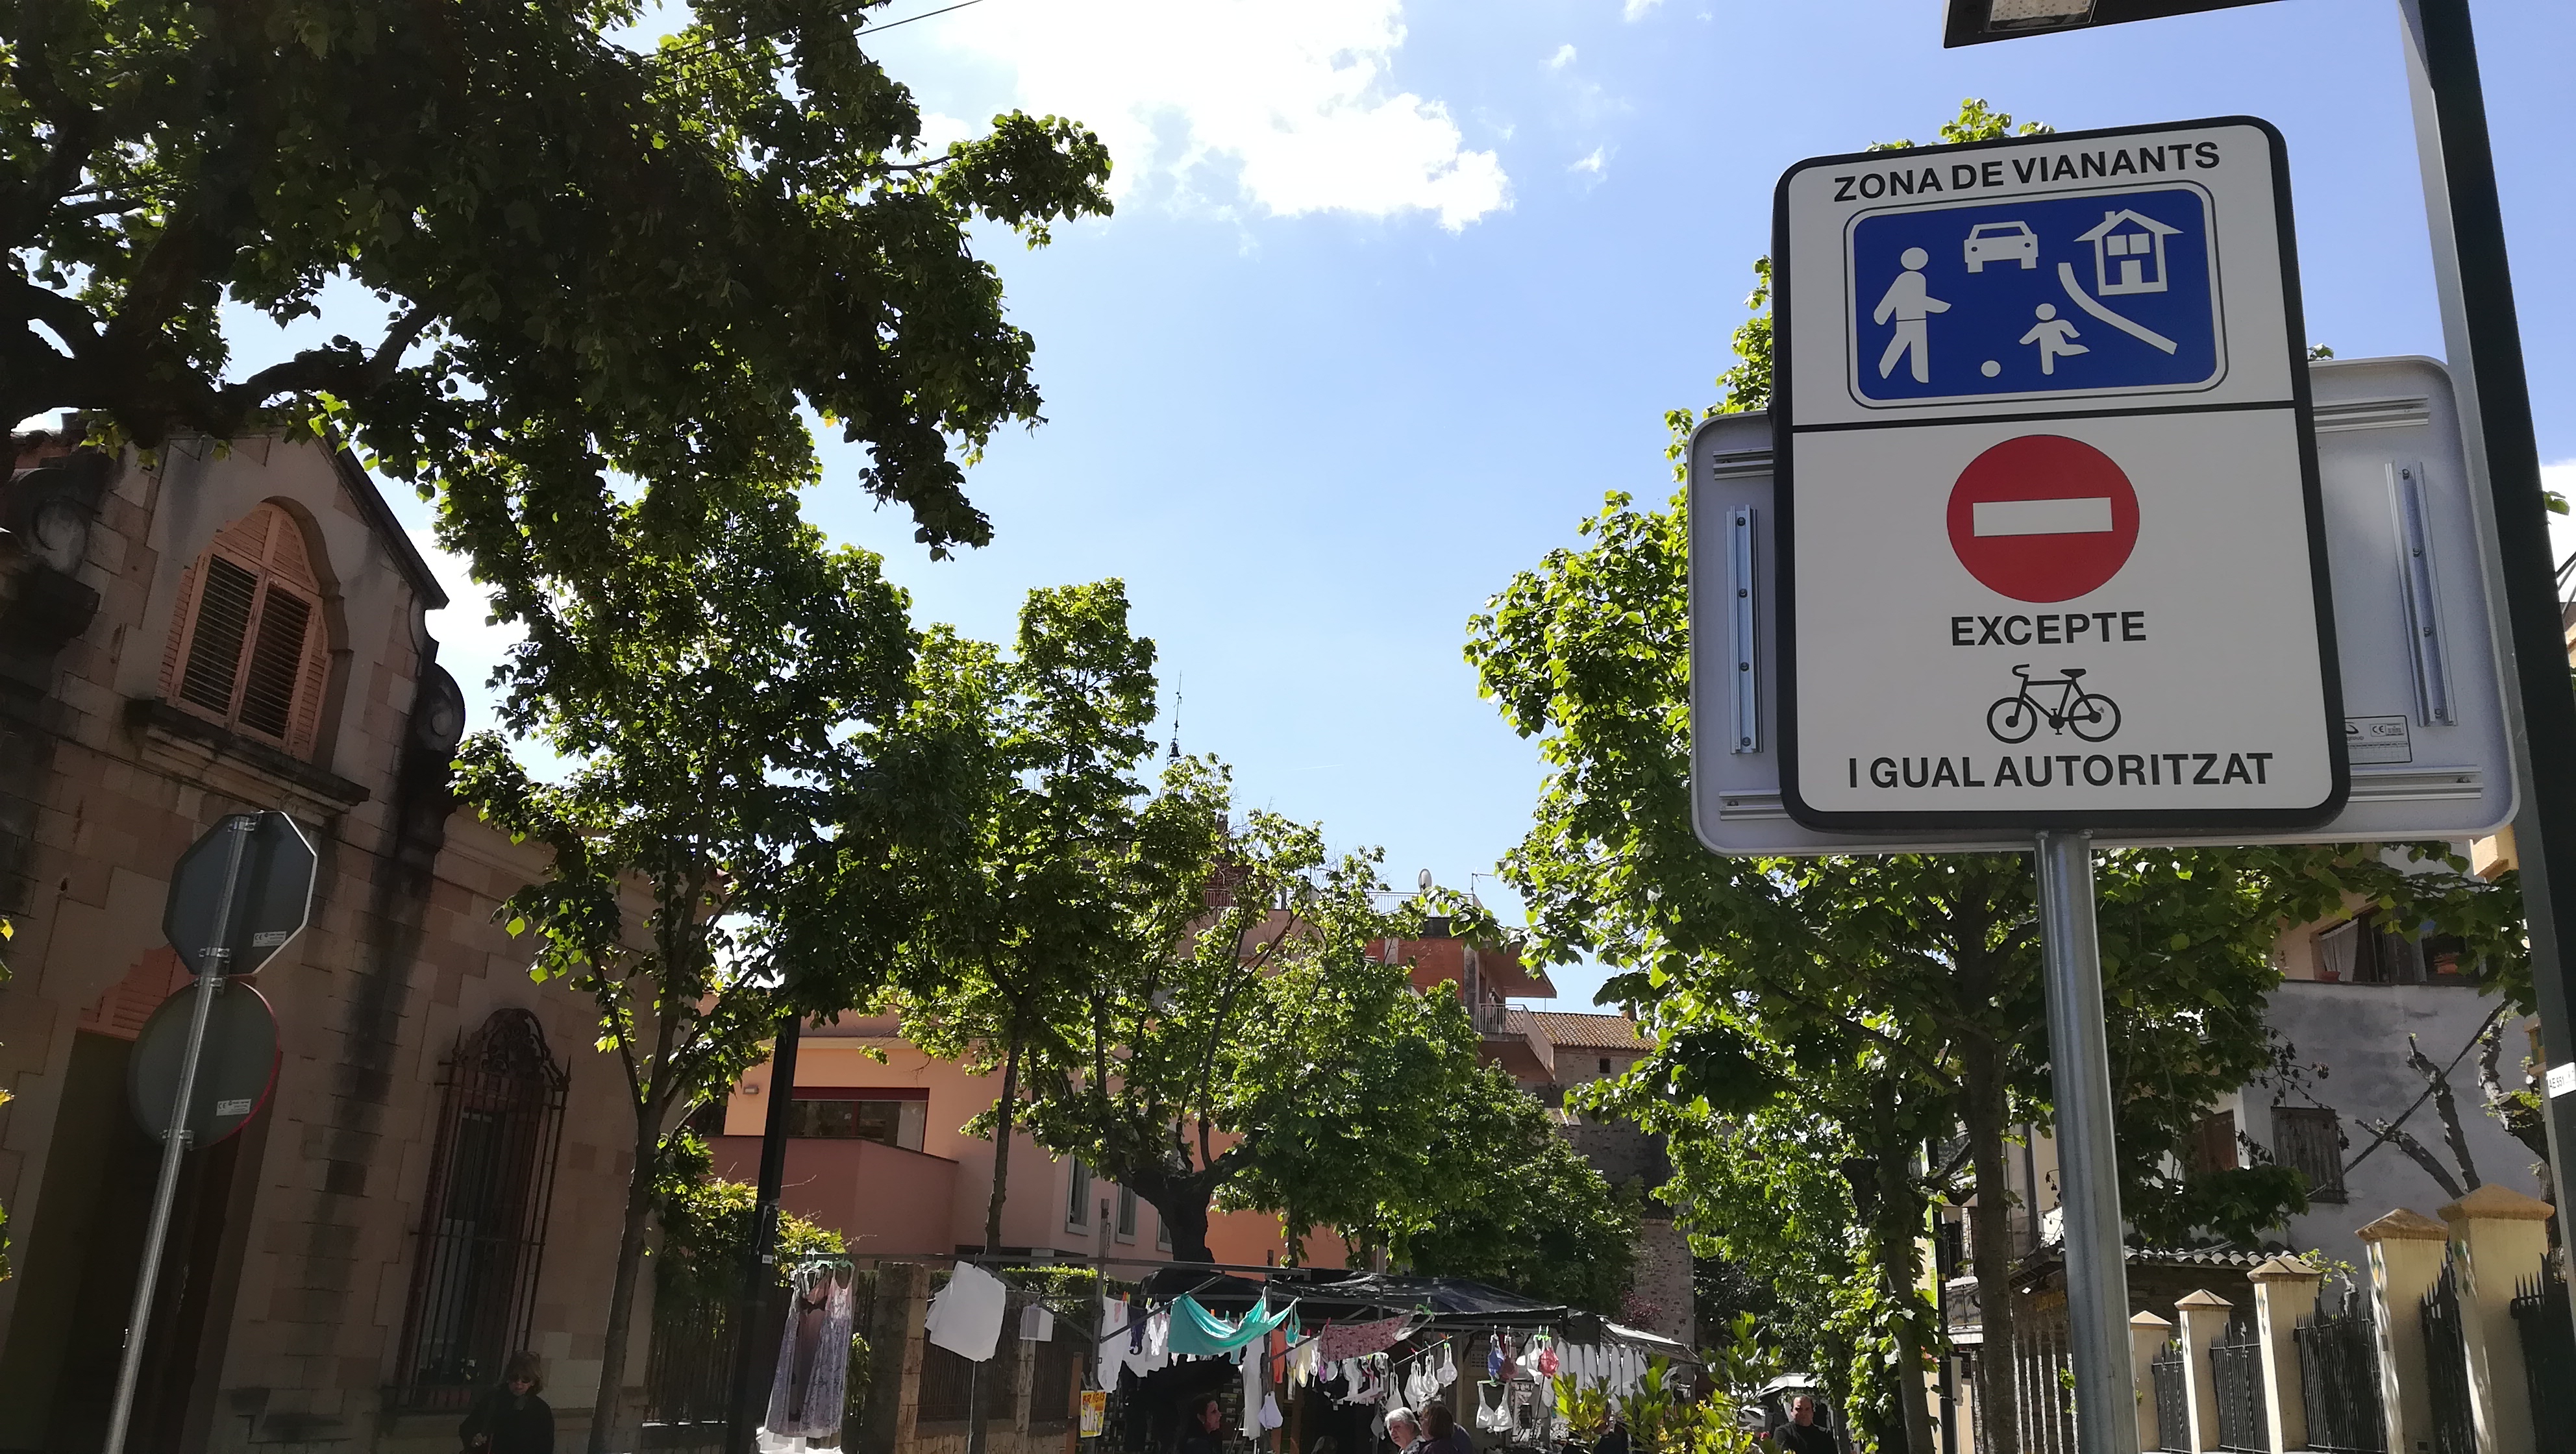  Nova senyalització al centre de Cardedeu per millorar la seguretat de vianants i ciclistes